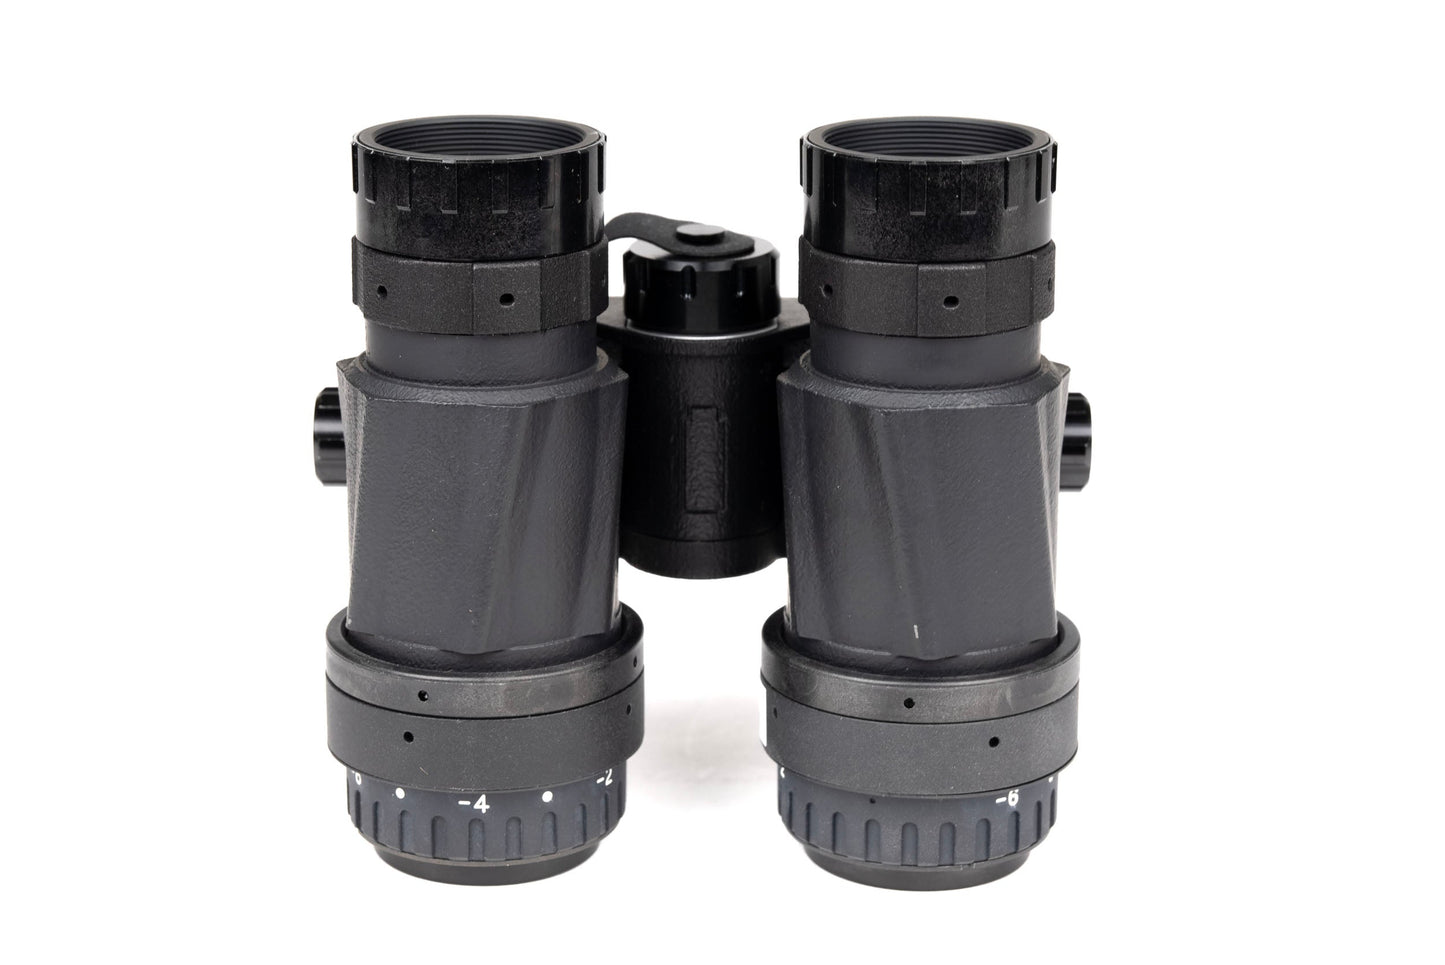 Custom Built Low Light Innovations Aeternus Binocular NVG